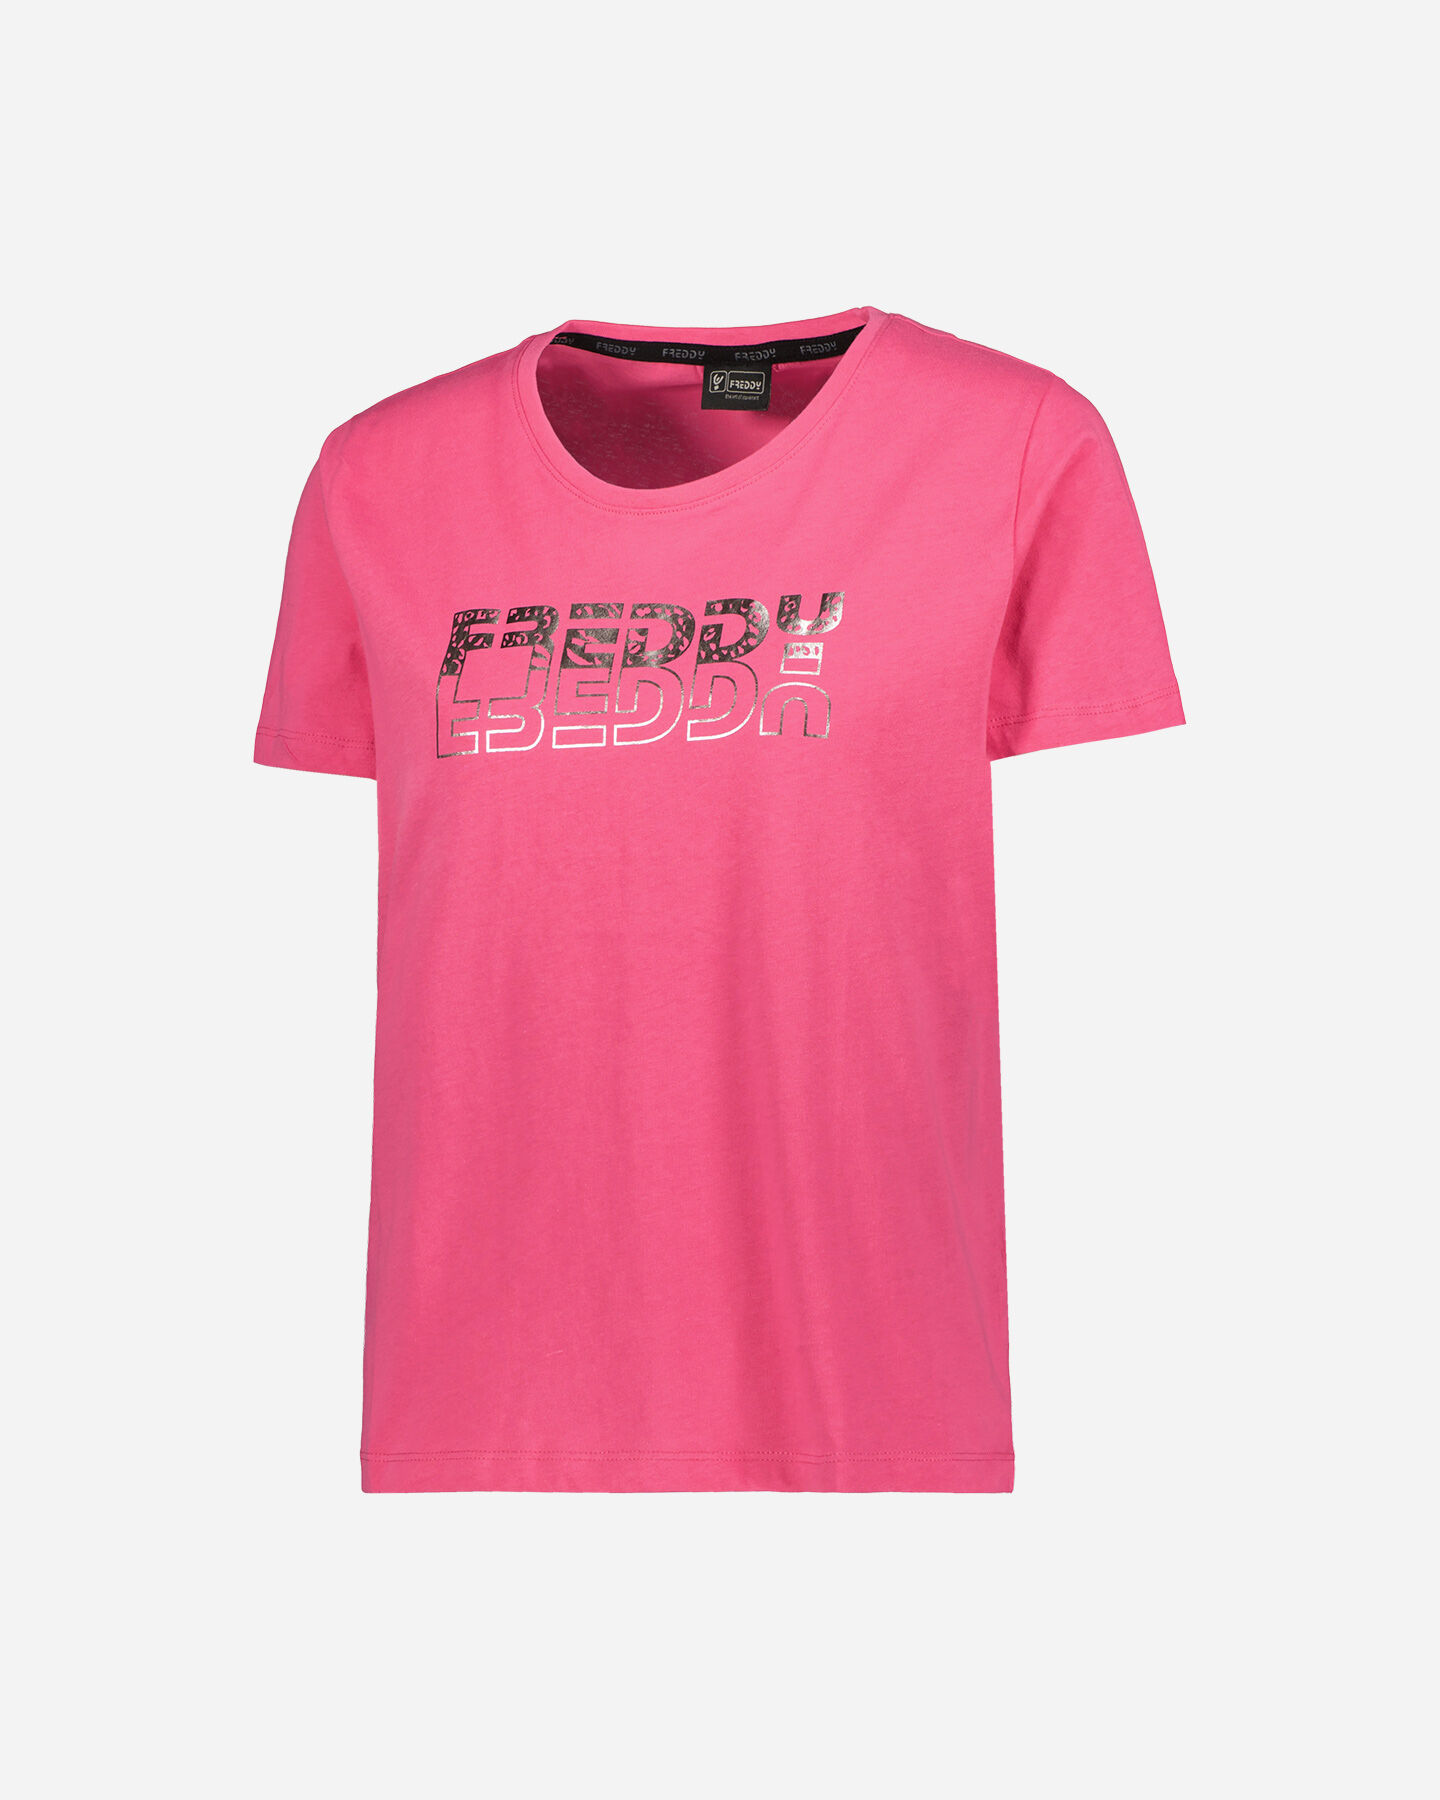  T-Shirt FREDDY BIG LOGO W S5488033|W69-|S scatto 0